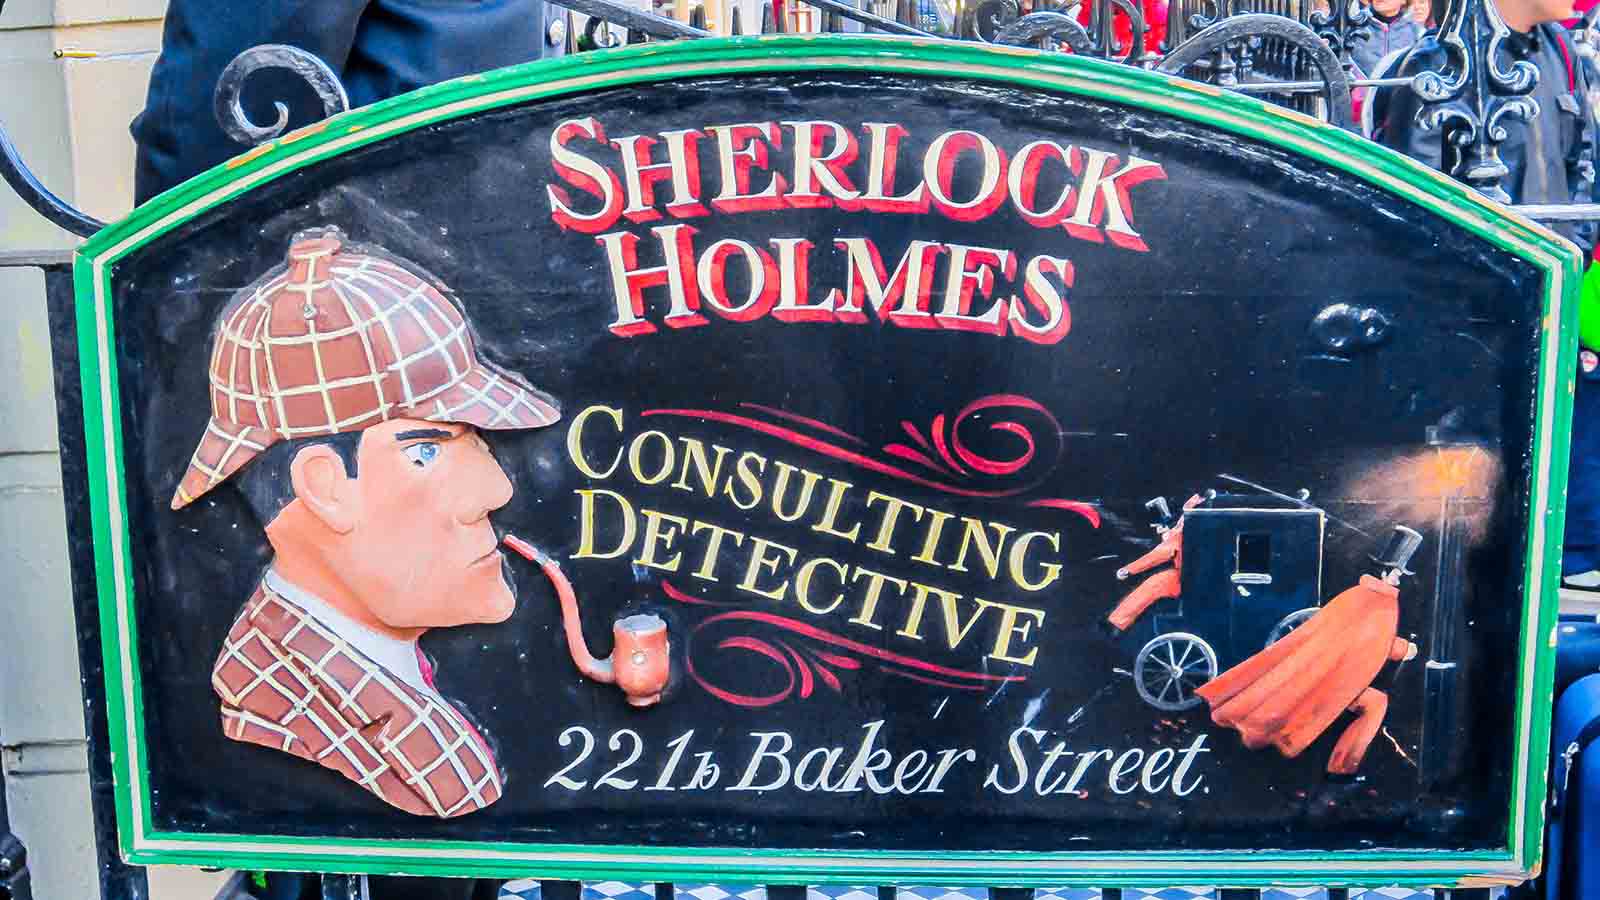 Old Sherlock Holmes sign for 221b Baker Street